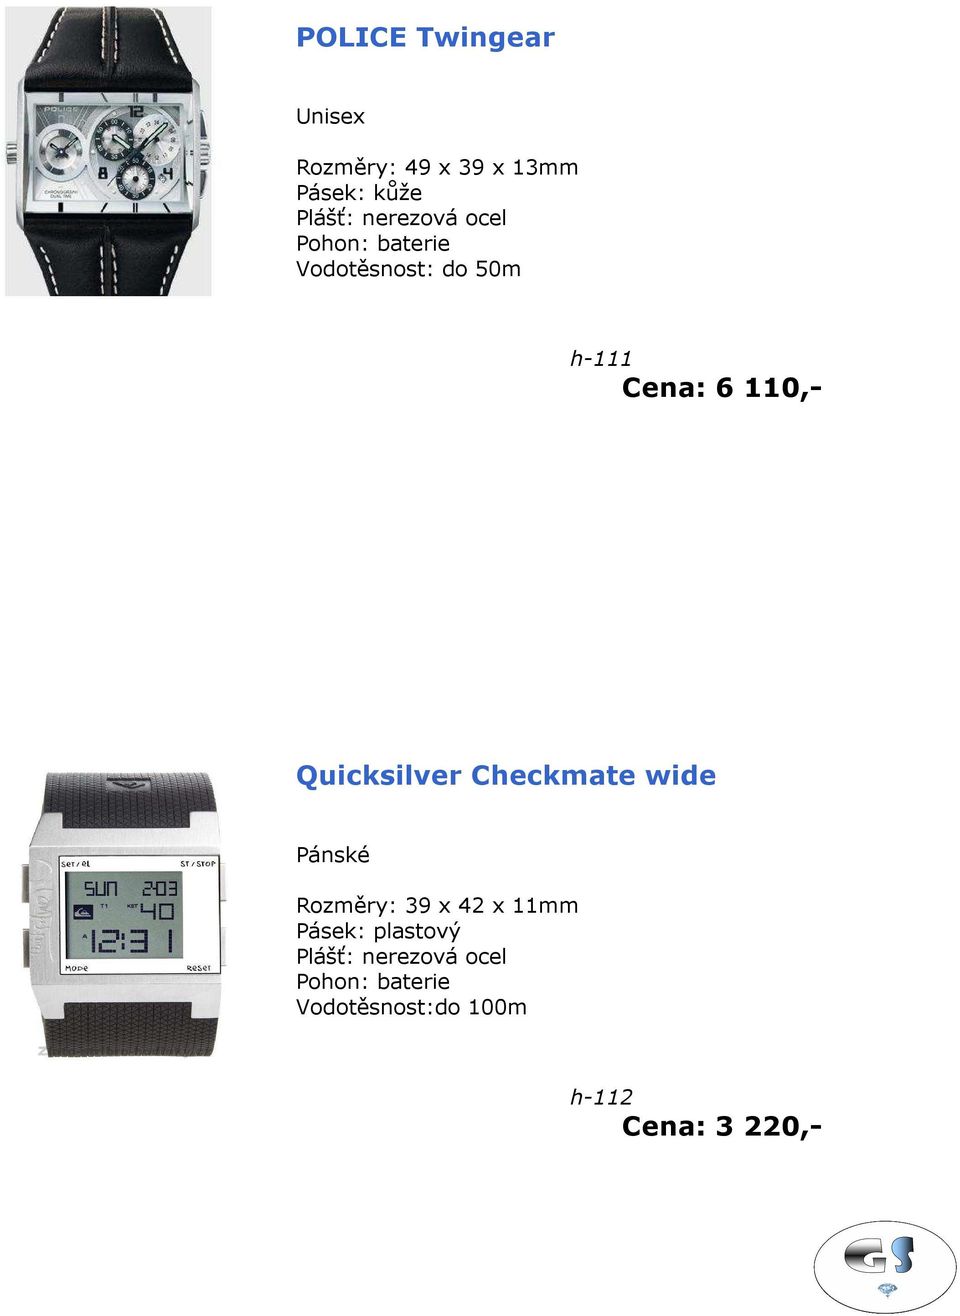 Quicksilver Checkmate wide Pánské Rozměry: 39 x 42 x 11mm Pásek: